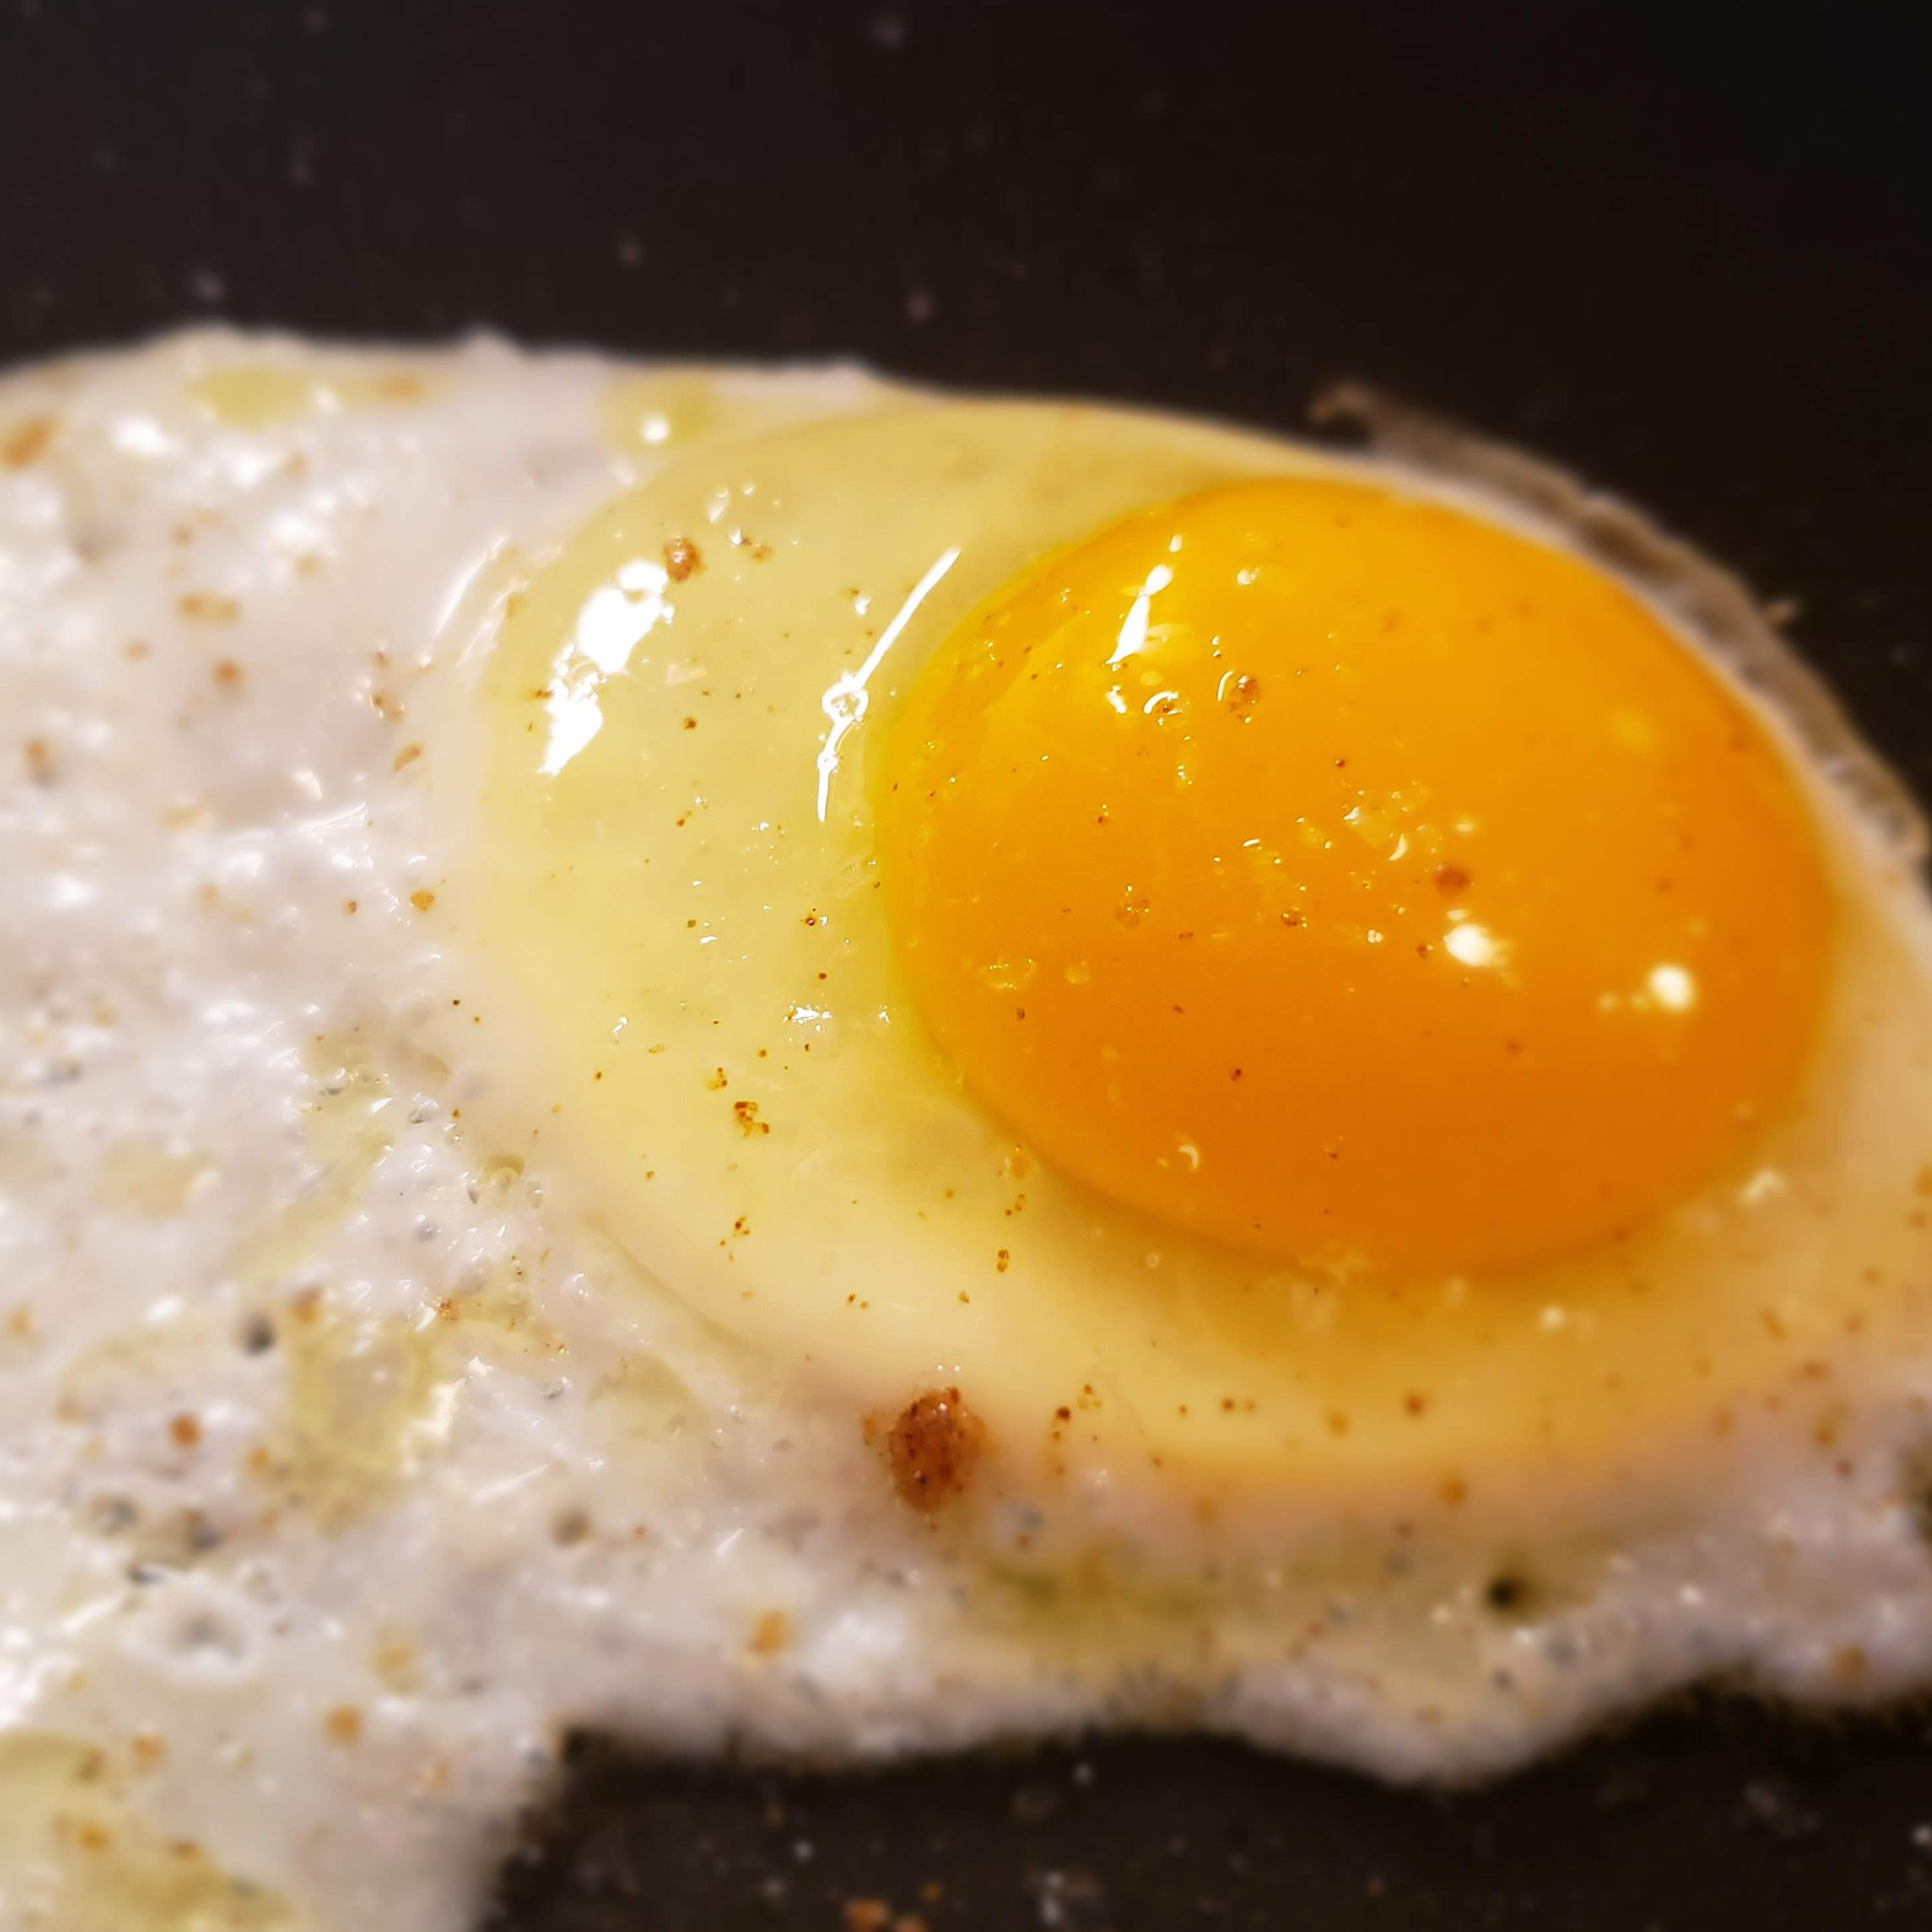 Egg frying in a skillet